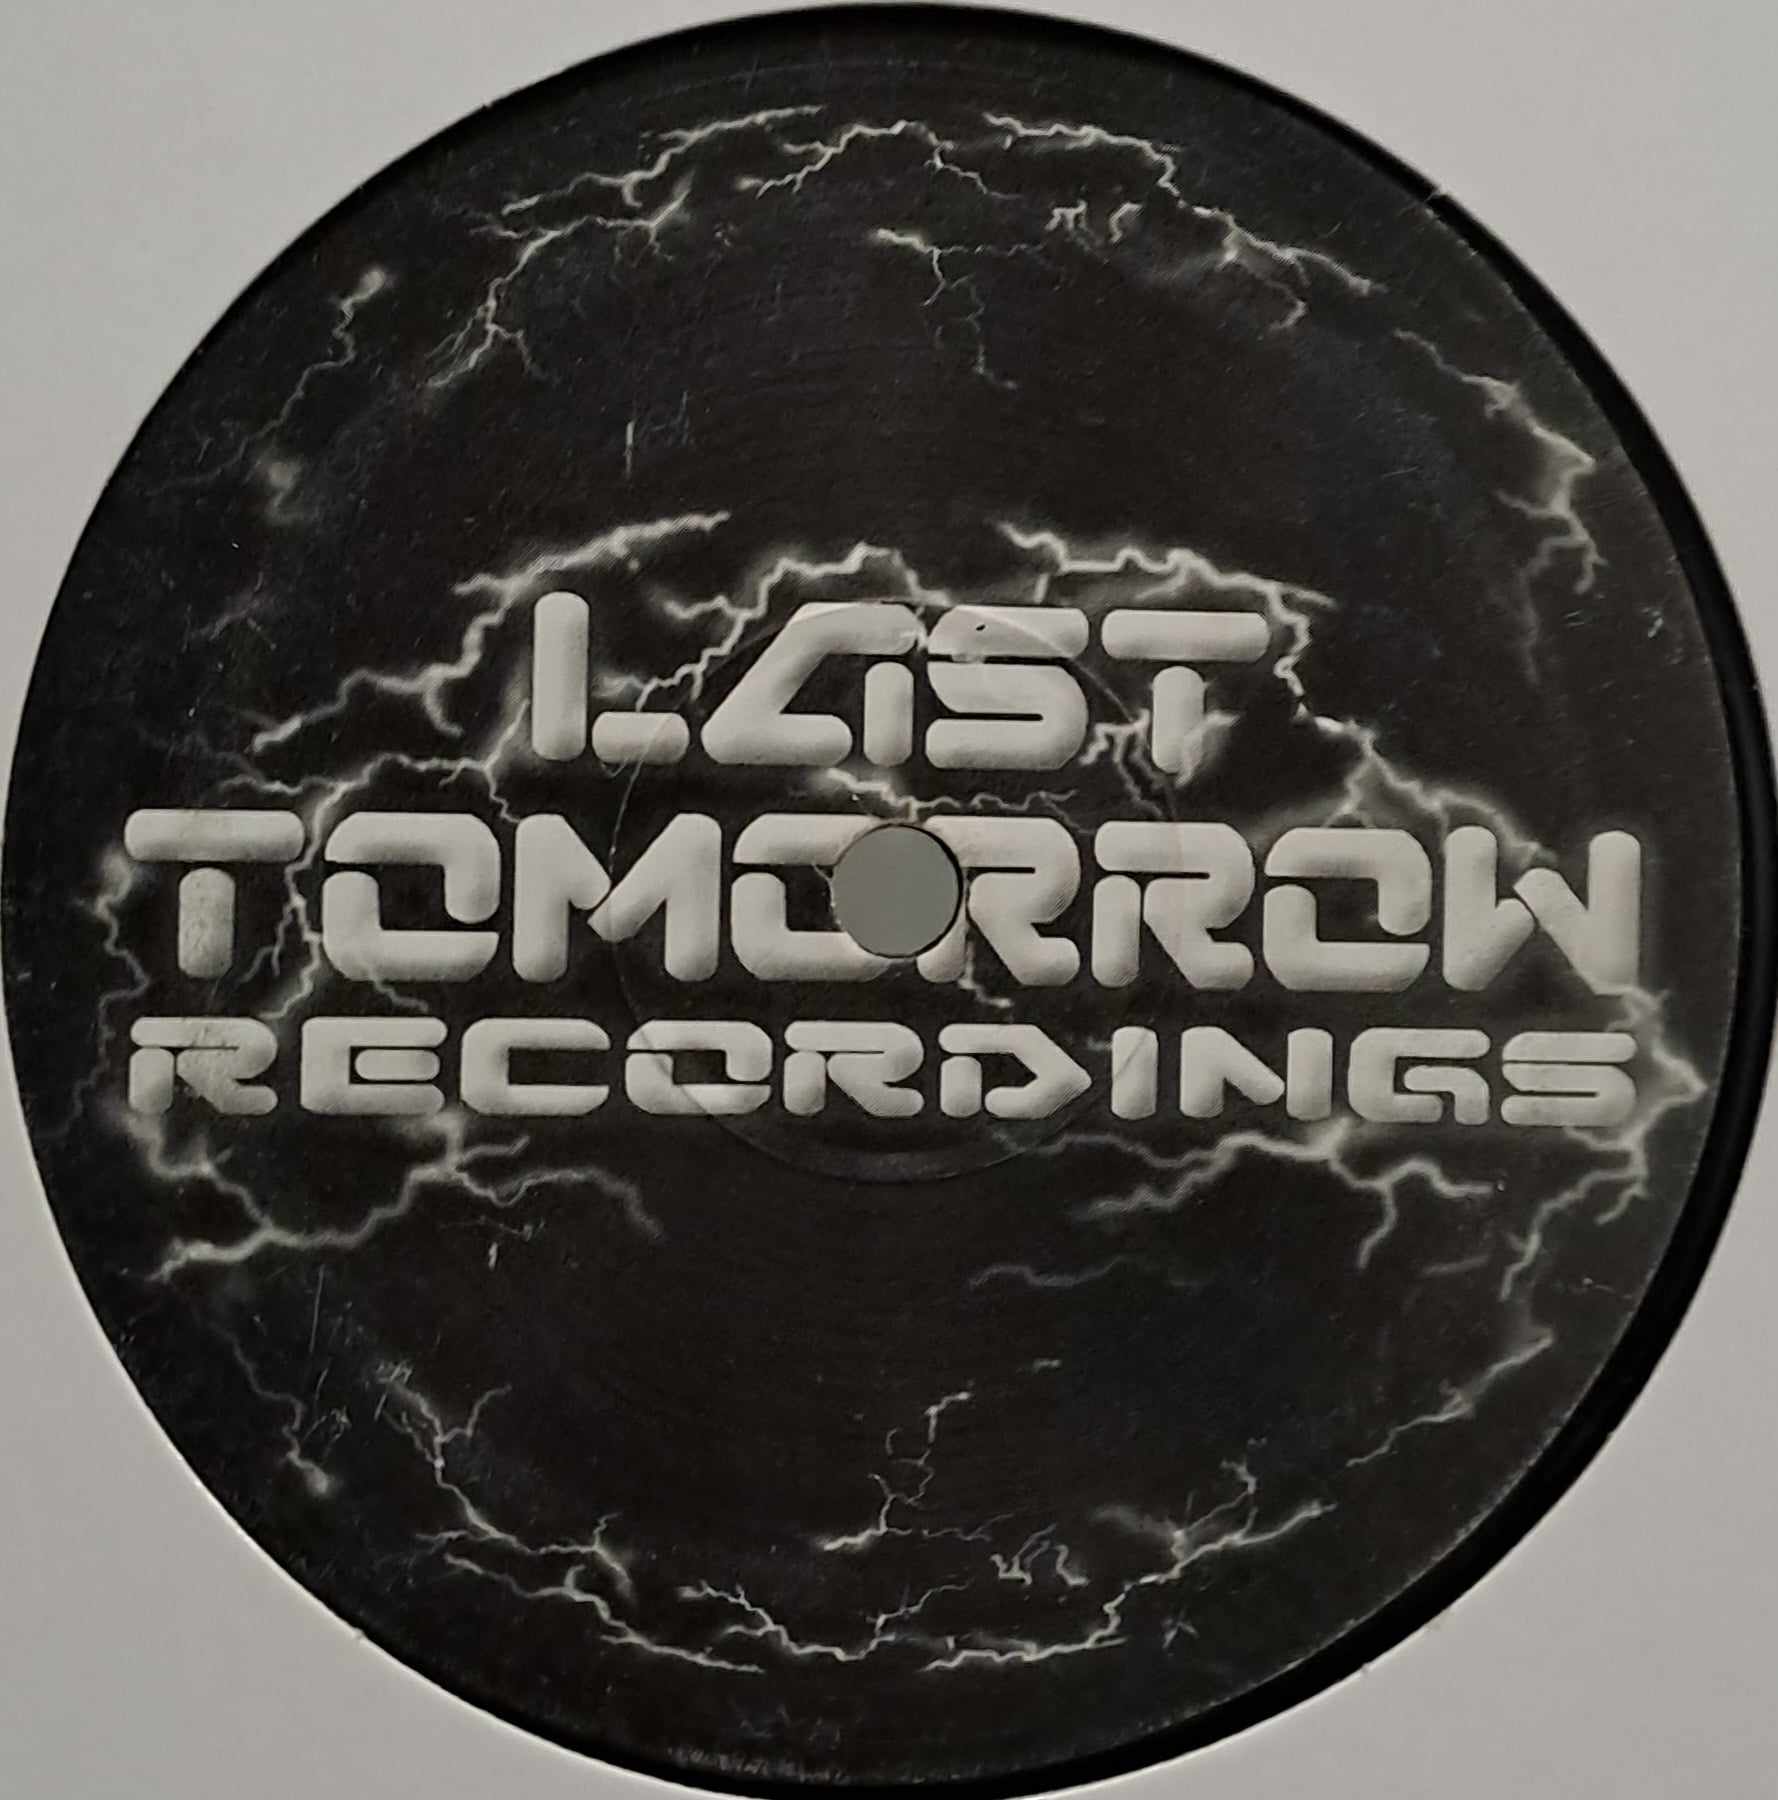 Last Tomorrow Recordings 2000 / 3 - vinyle hardcore